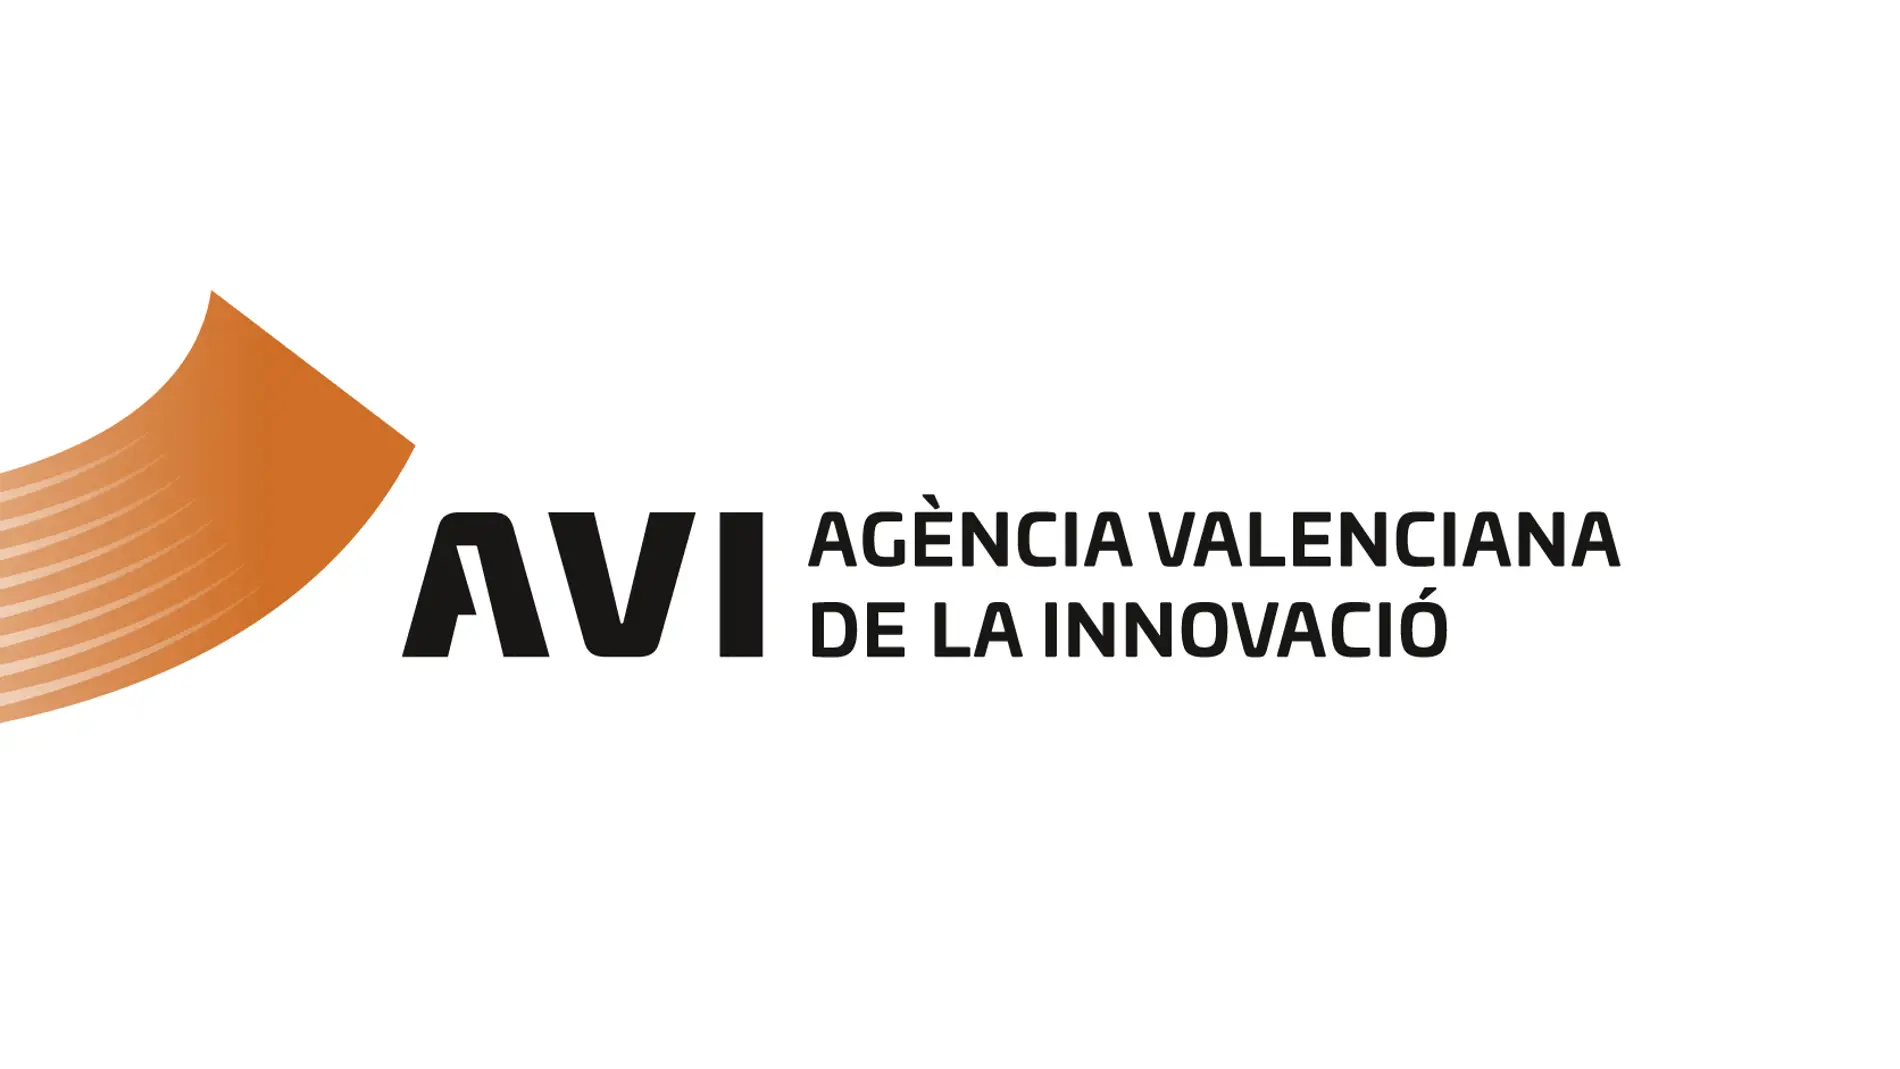 La Concejalía de Modernización de la Administración, ha recibido una subvención de 29.900 euros de la Agencia Valenciana de la Innovación (AVI) 